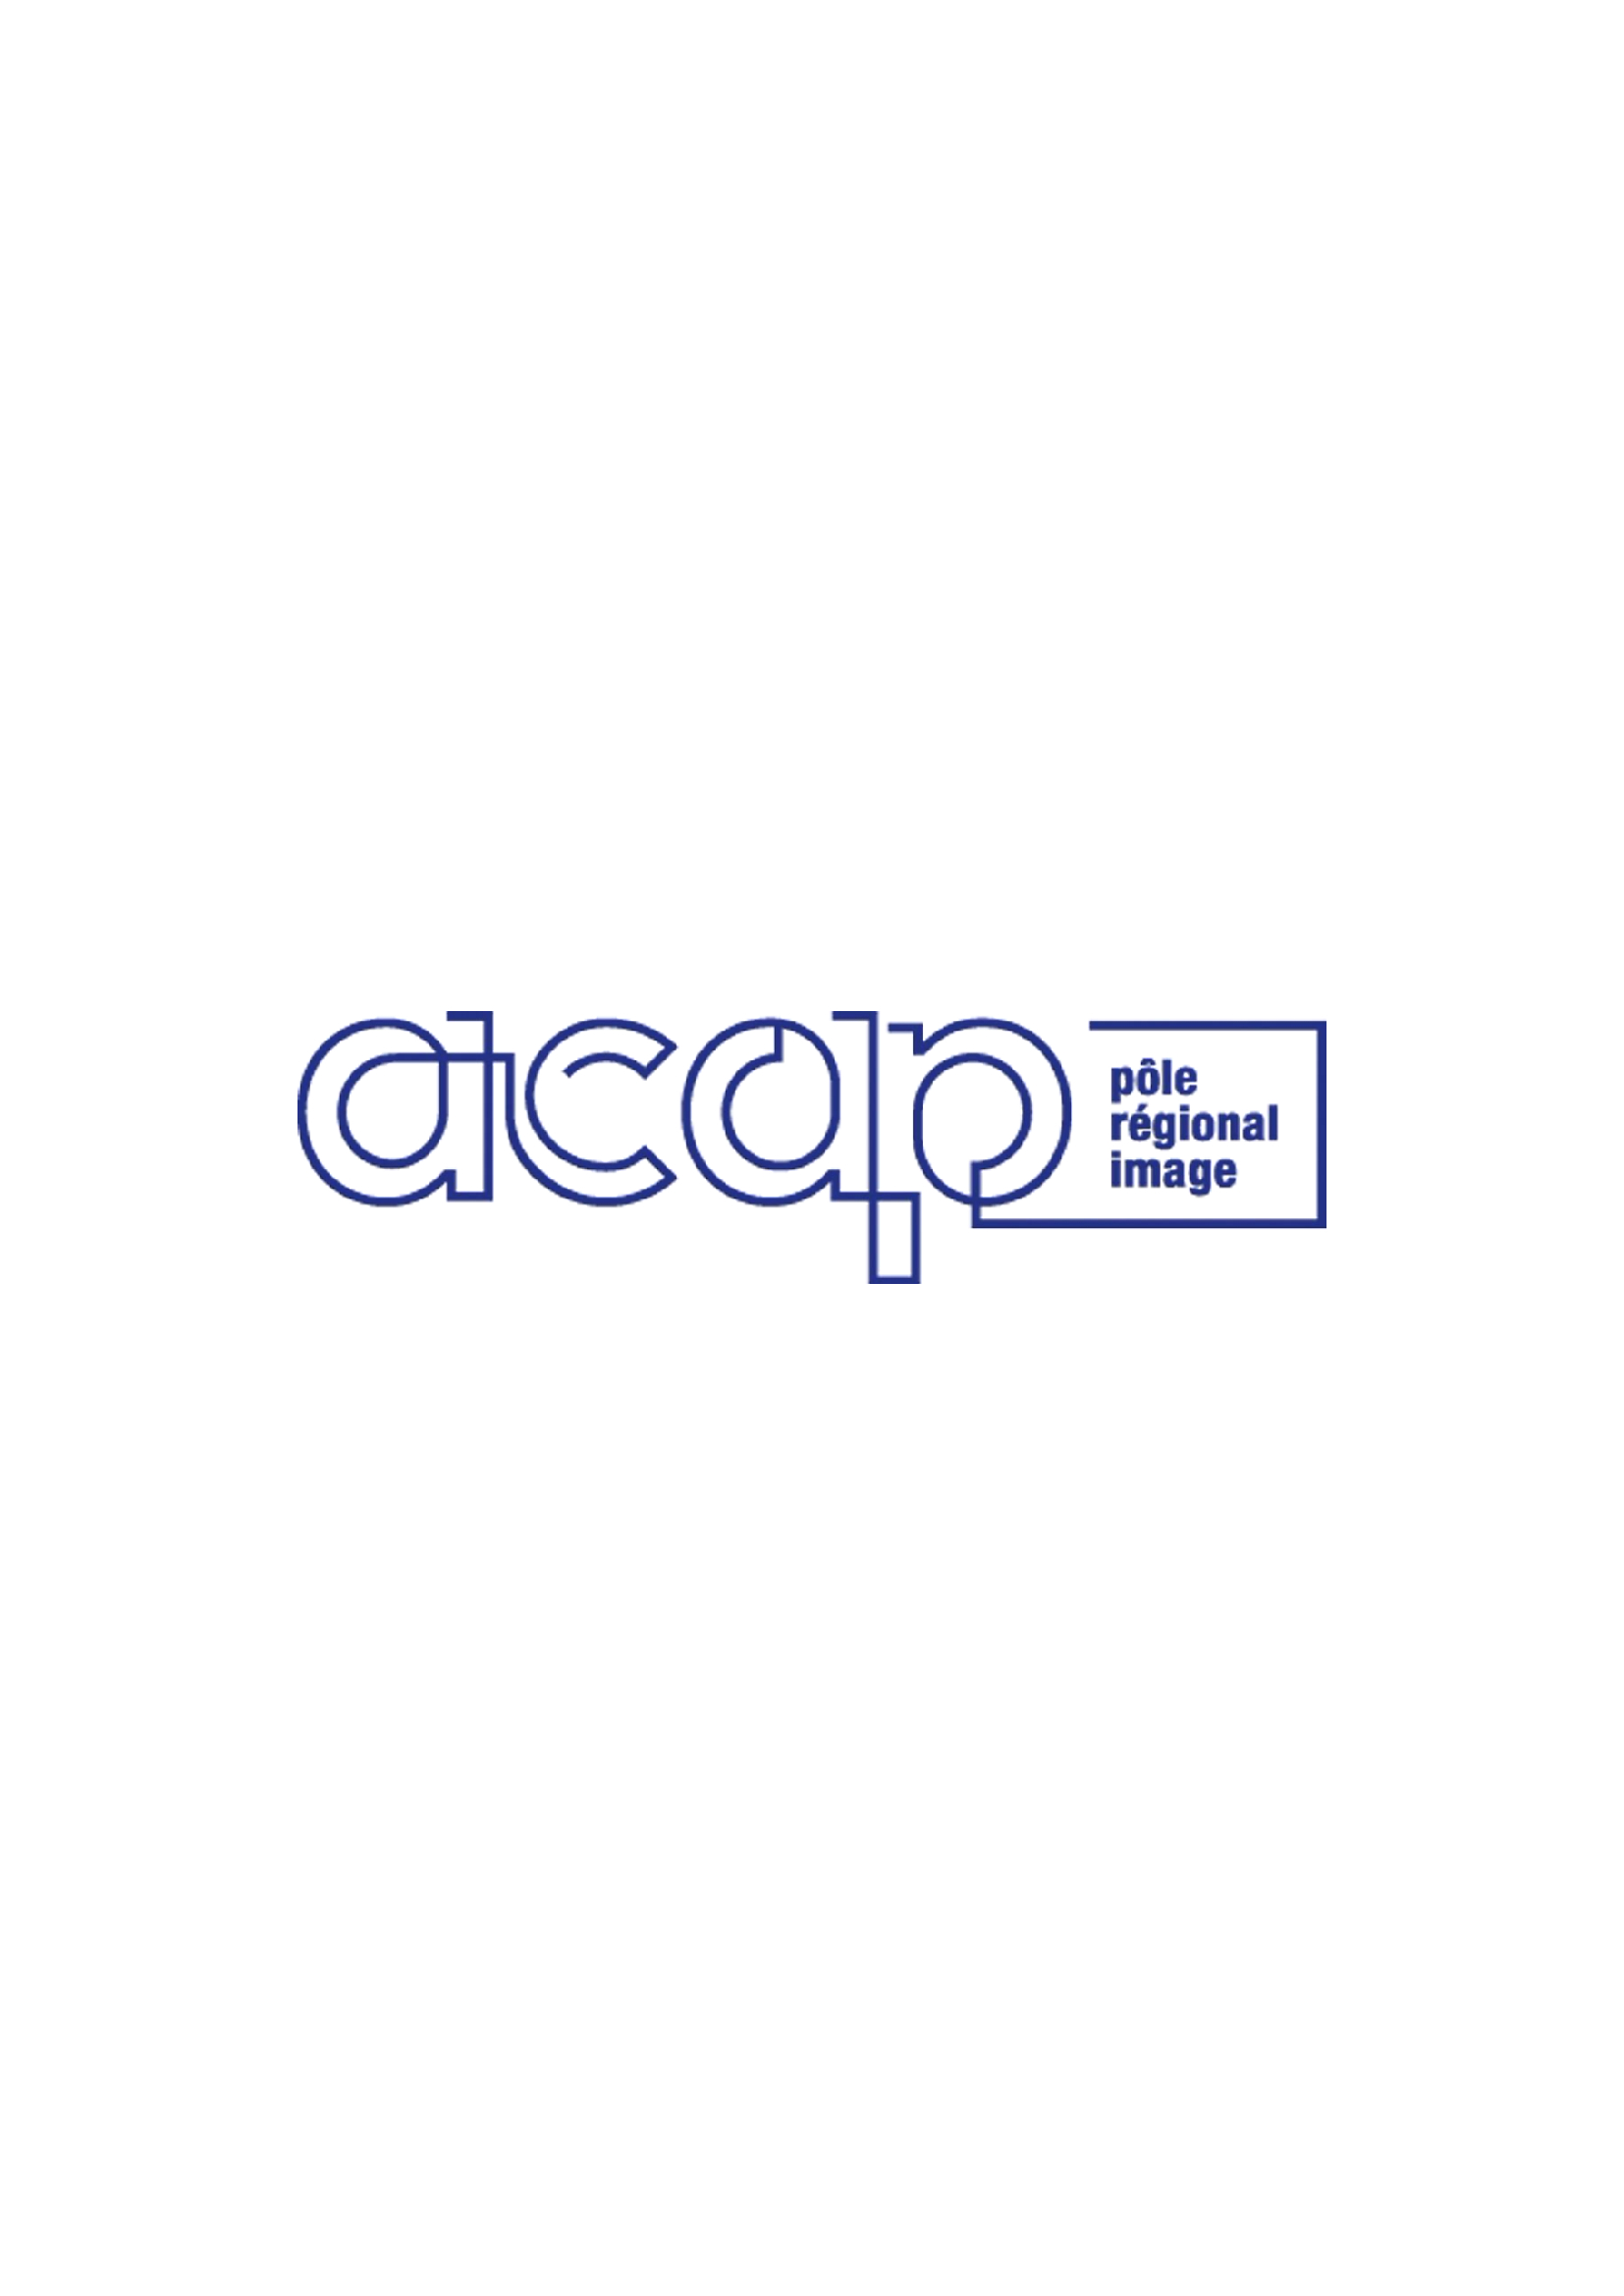 acap-logo-w